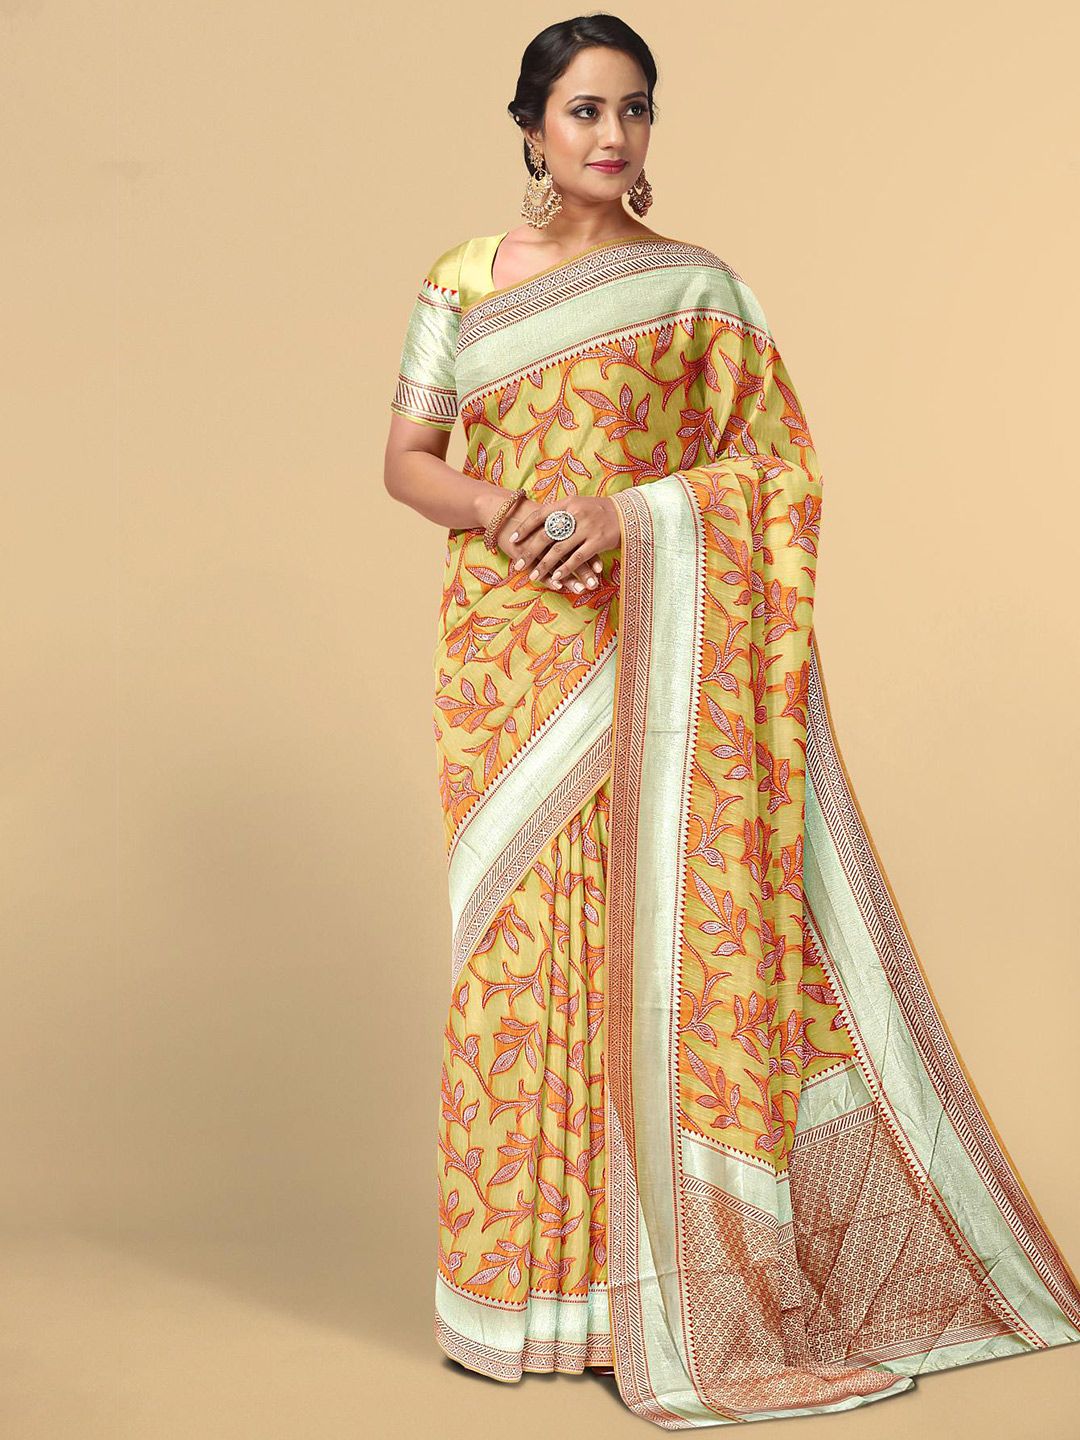 Kalamandir Yellow & Silver-Toned Floral Zari Silk Blend Saree Price in India